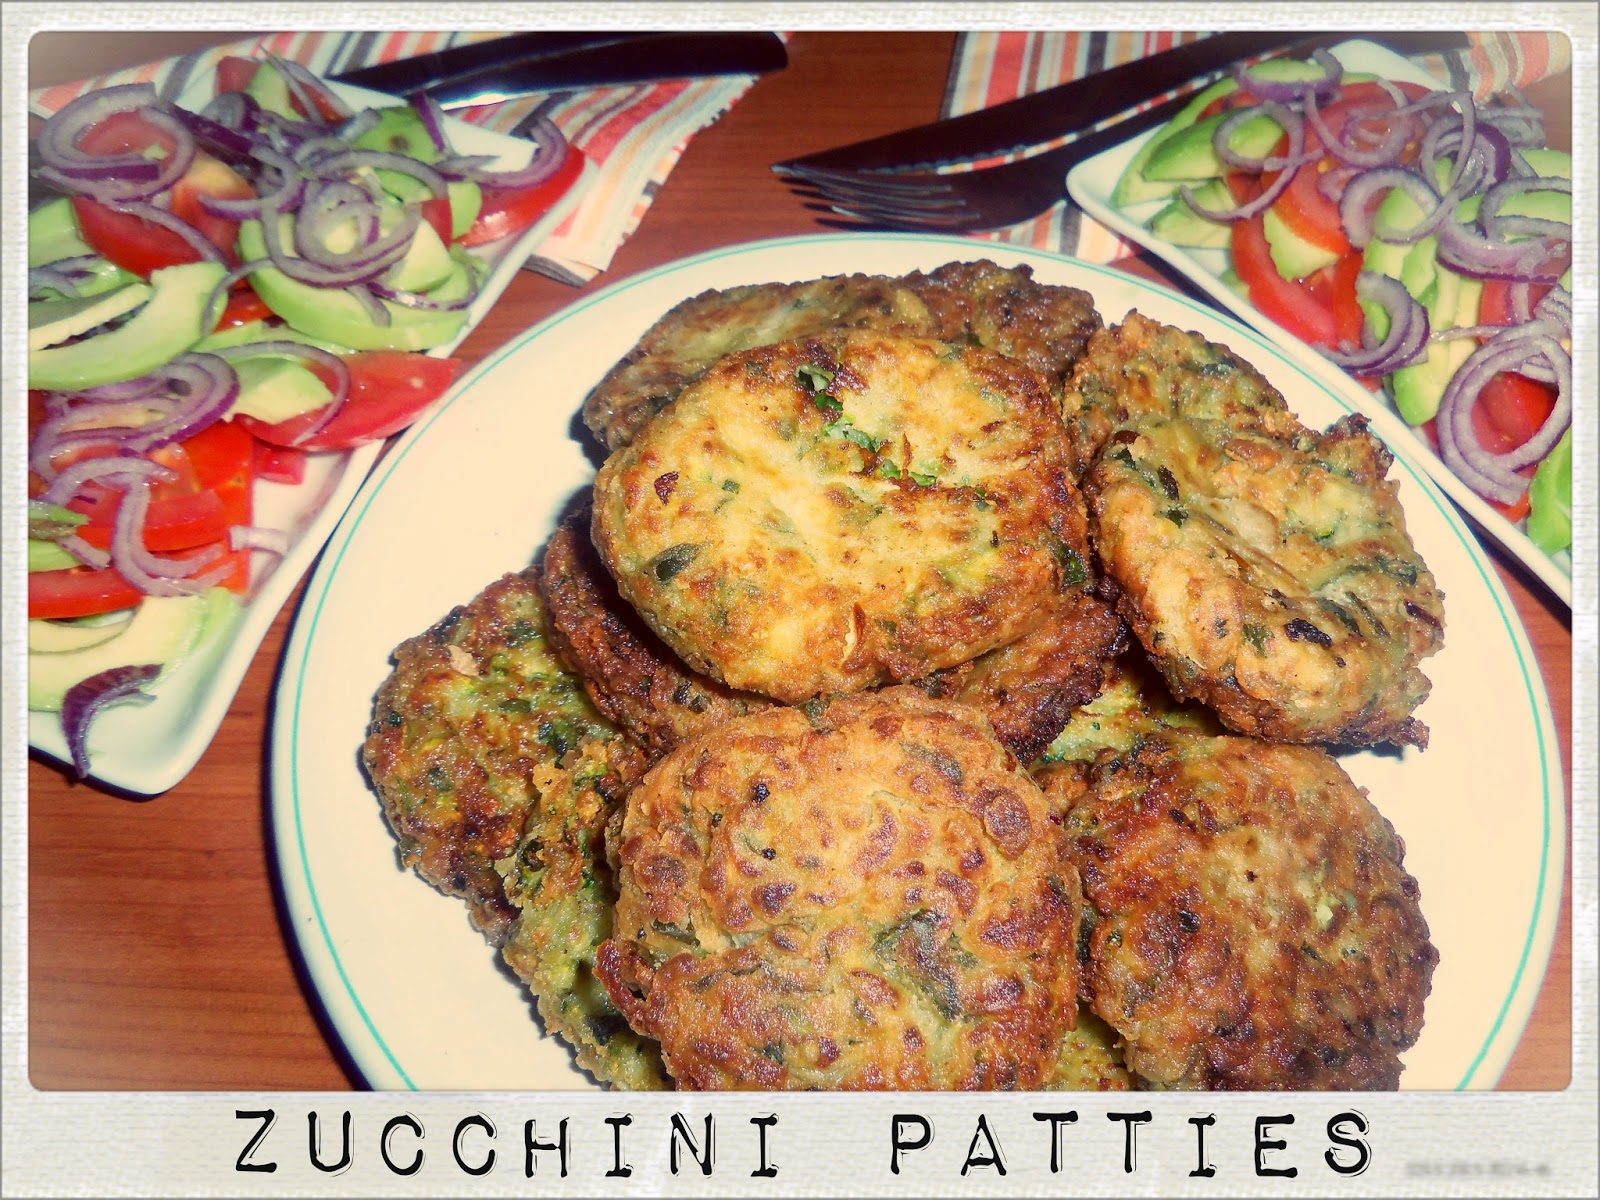 You've Got Meal!: Zucchini Patties